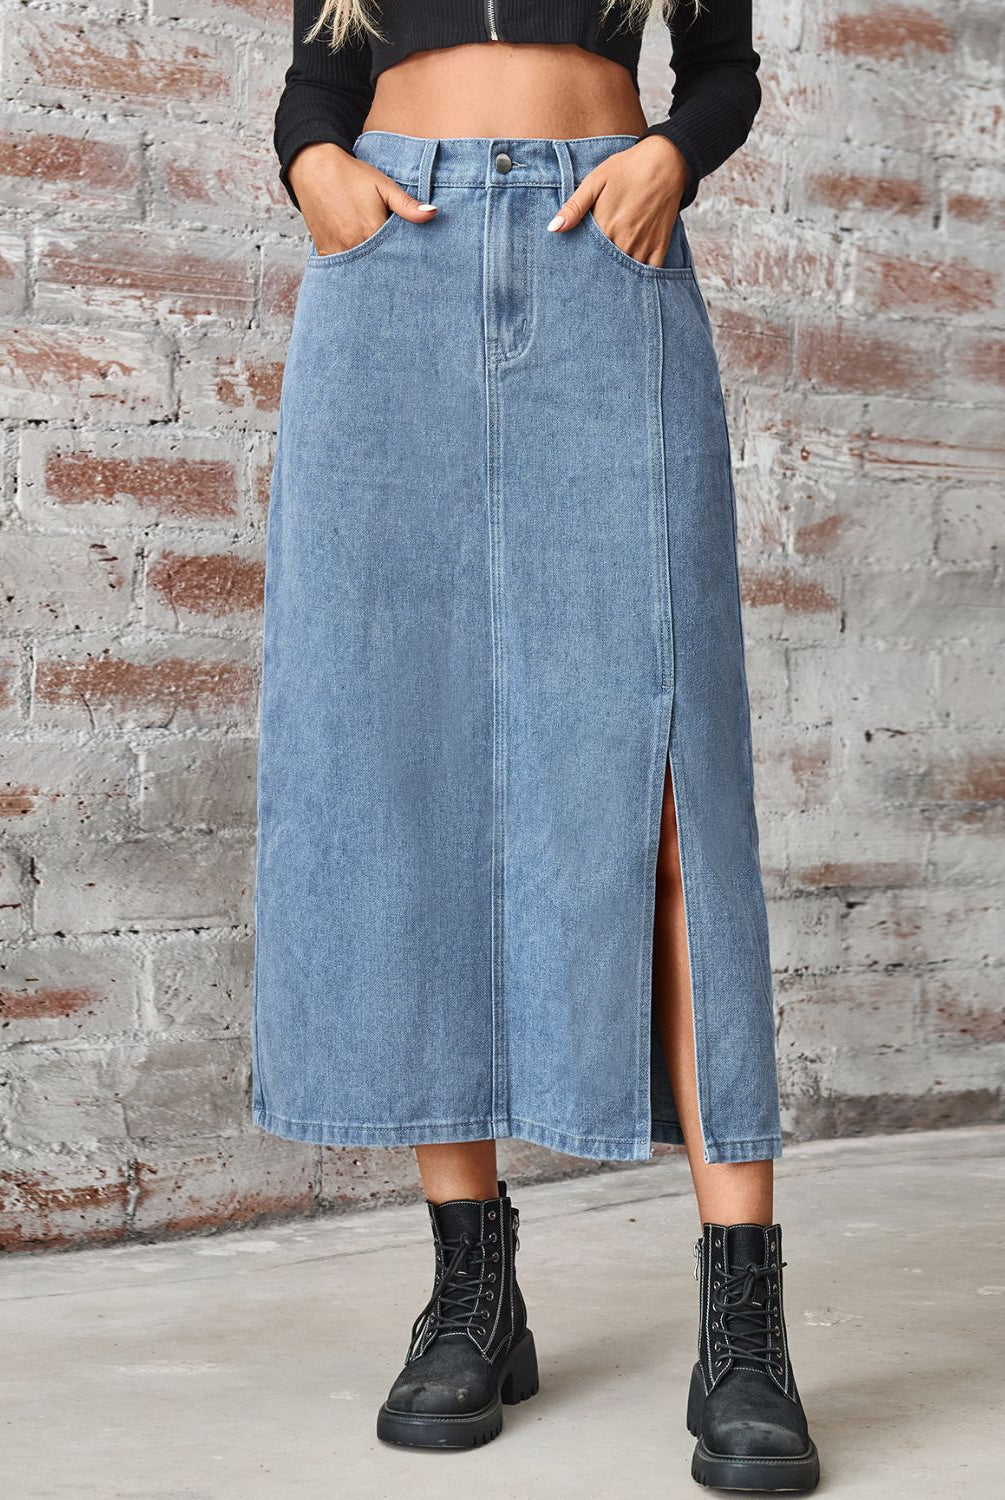 Women's long denim skirt with high waist, slit, and pockets.